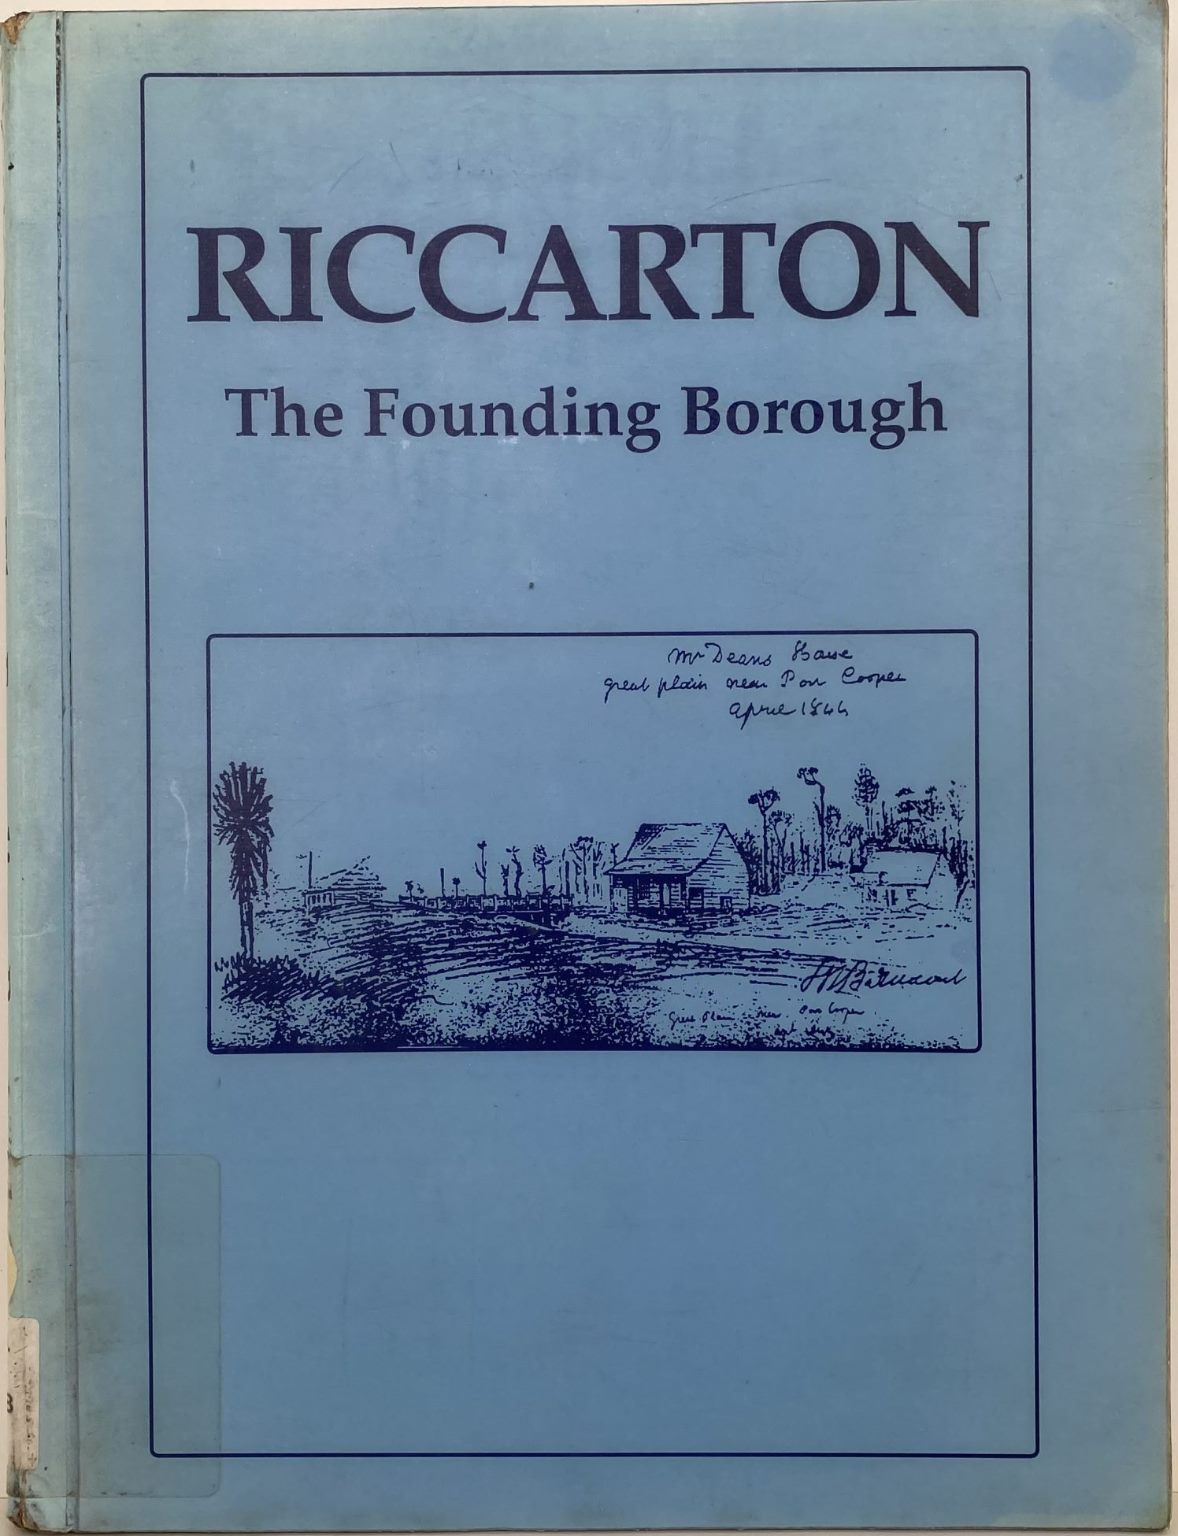 RICCARTON: The Founding Borough